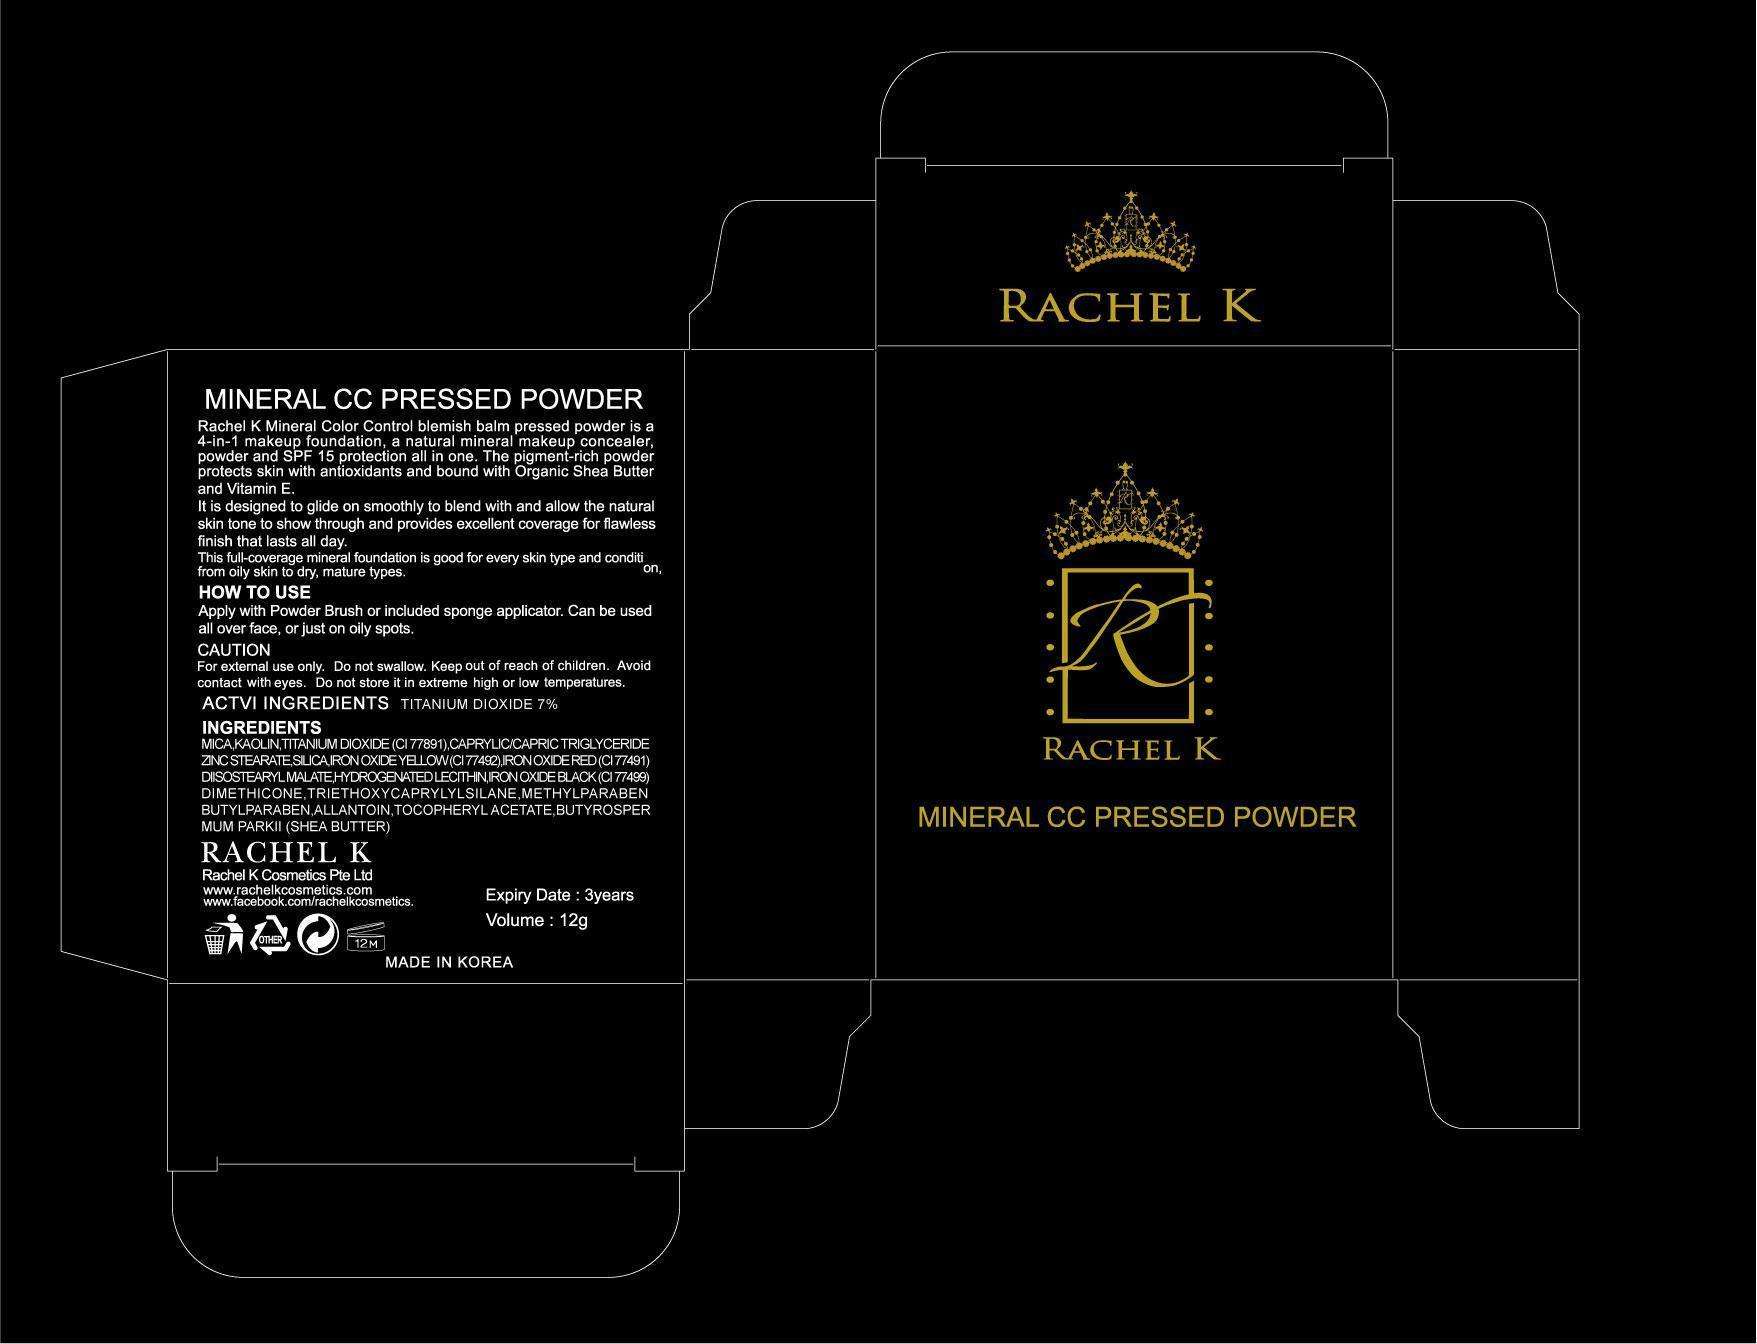 RACHEL K MINERAL CC PRESSED